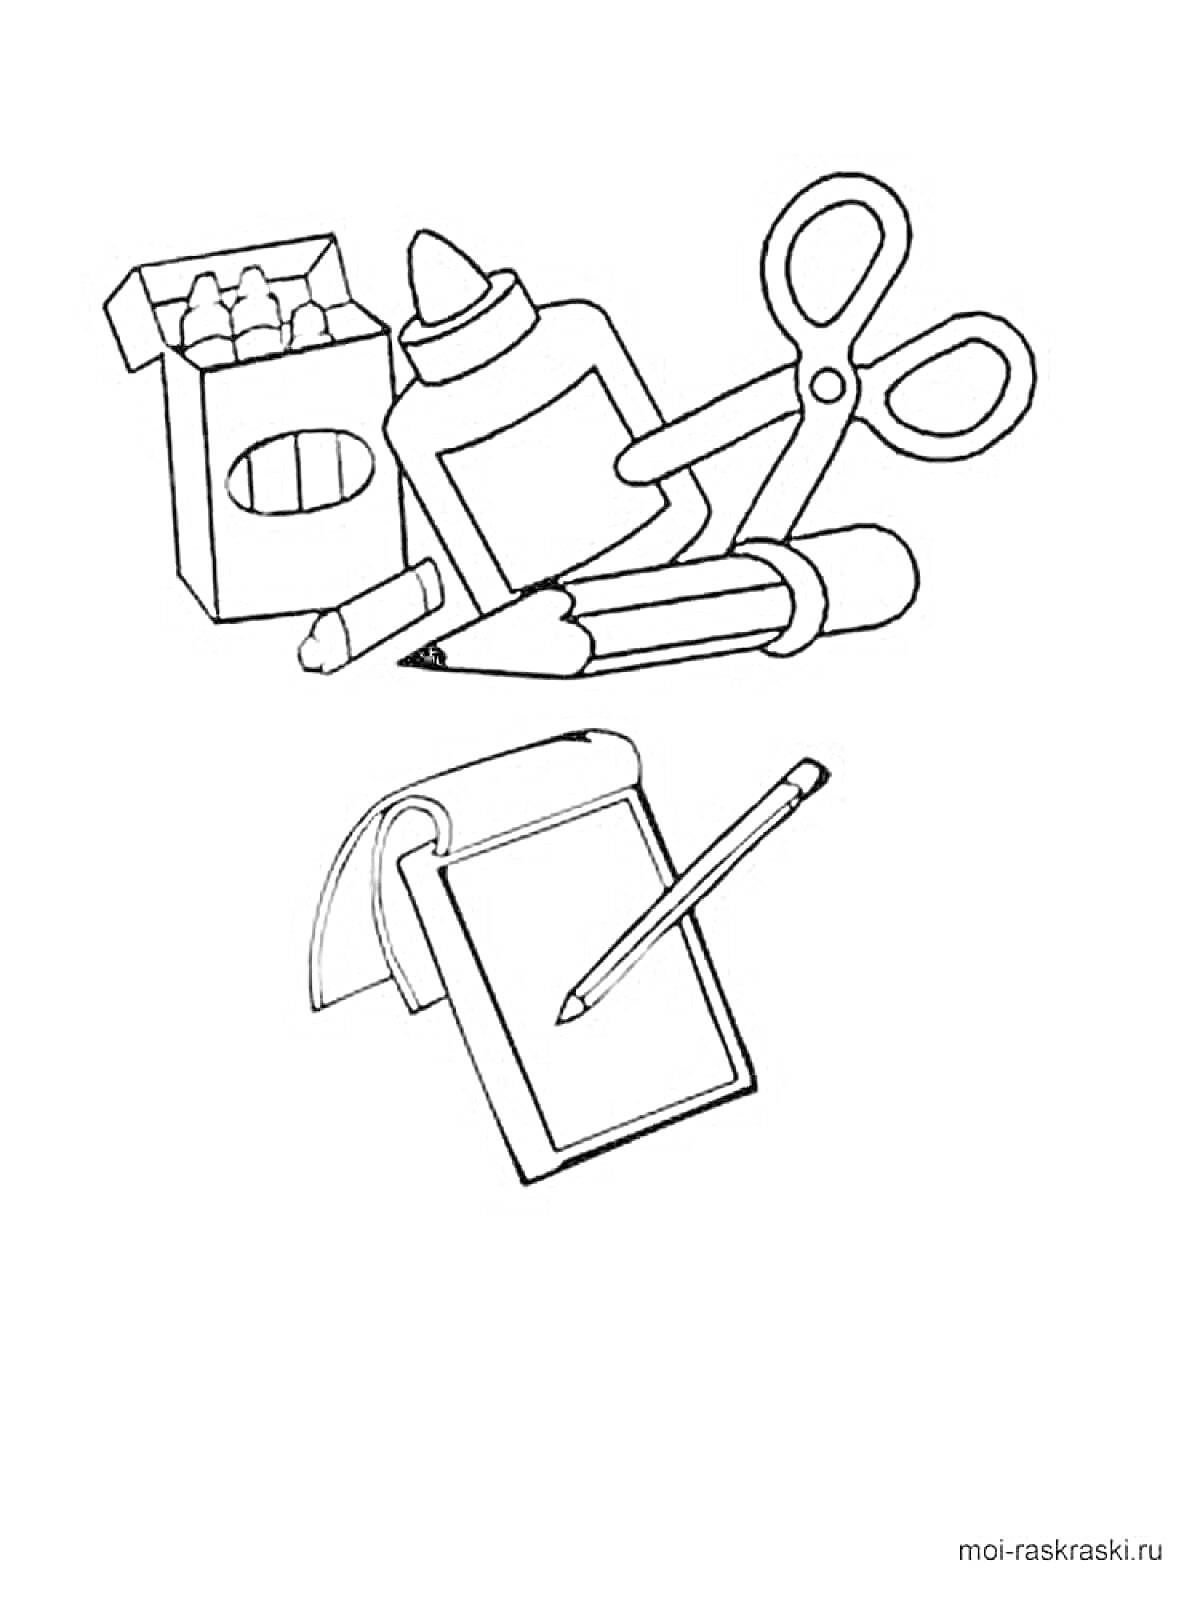 Школьные принадлежности: коробка с мелками, бутылка клея, ножницы, карандаш, точилка, блокнот и ручка